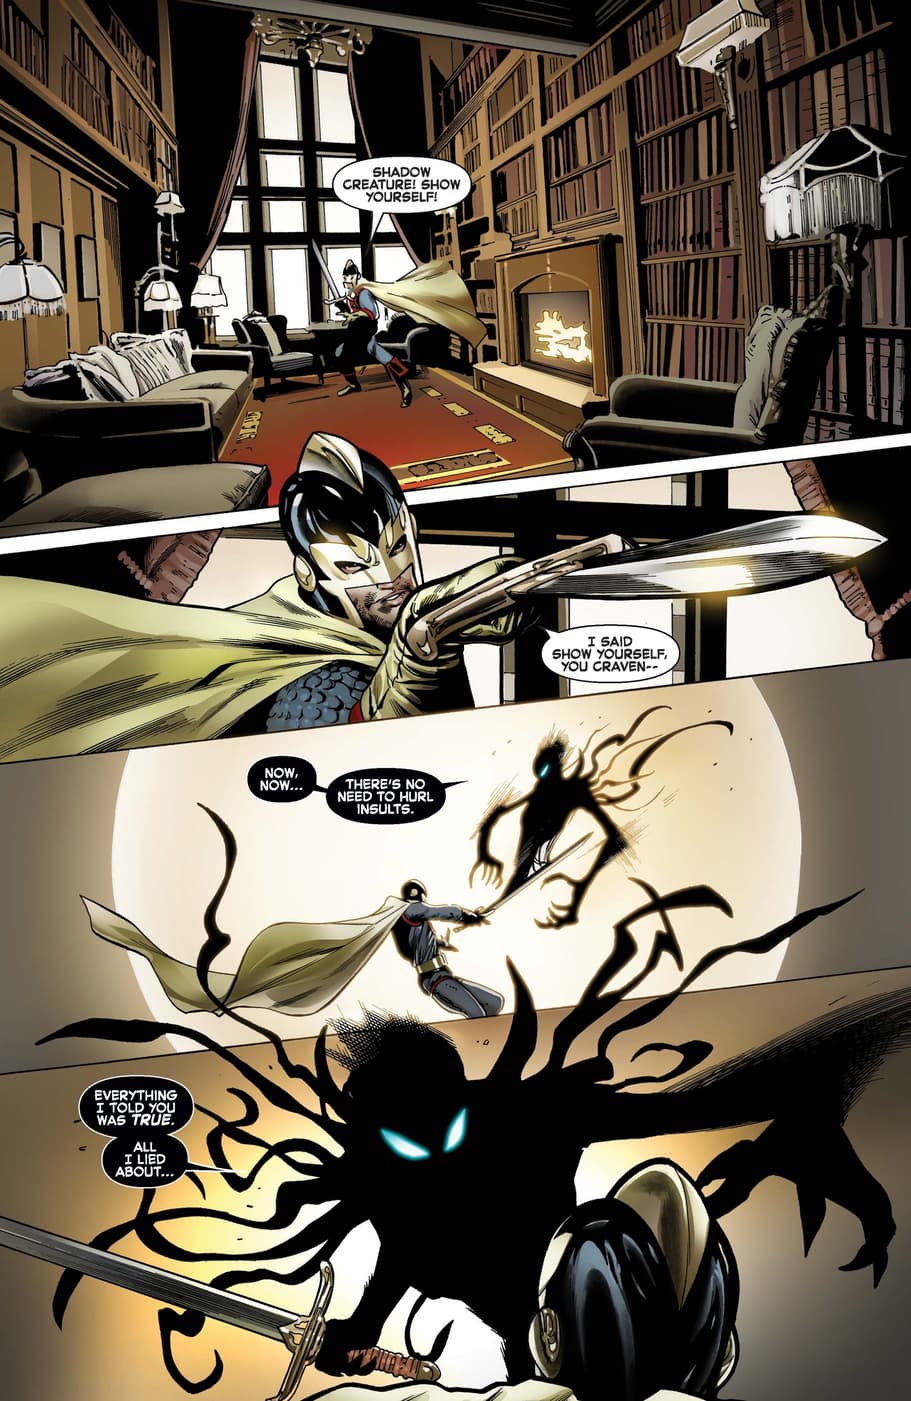 Symbiote Spider-Man versus Black Knight.